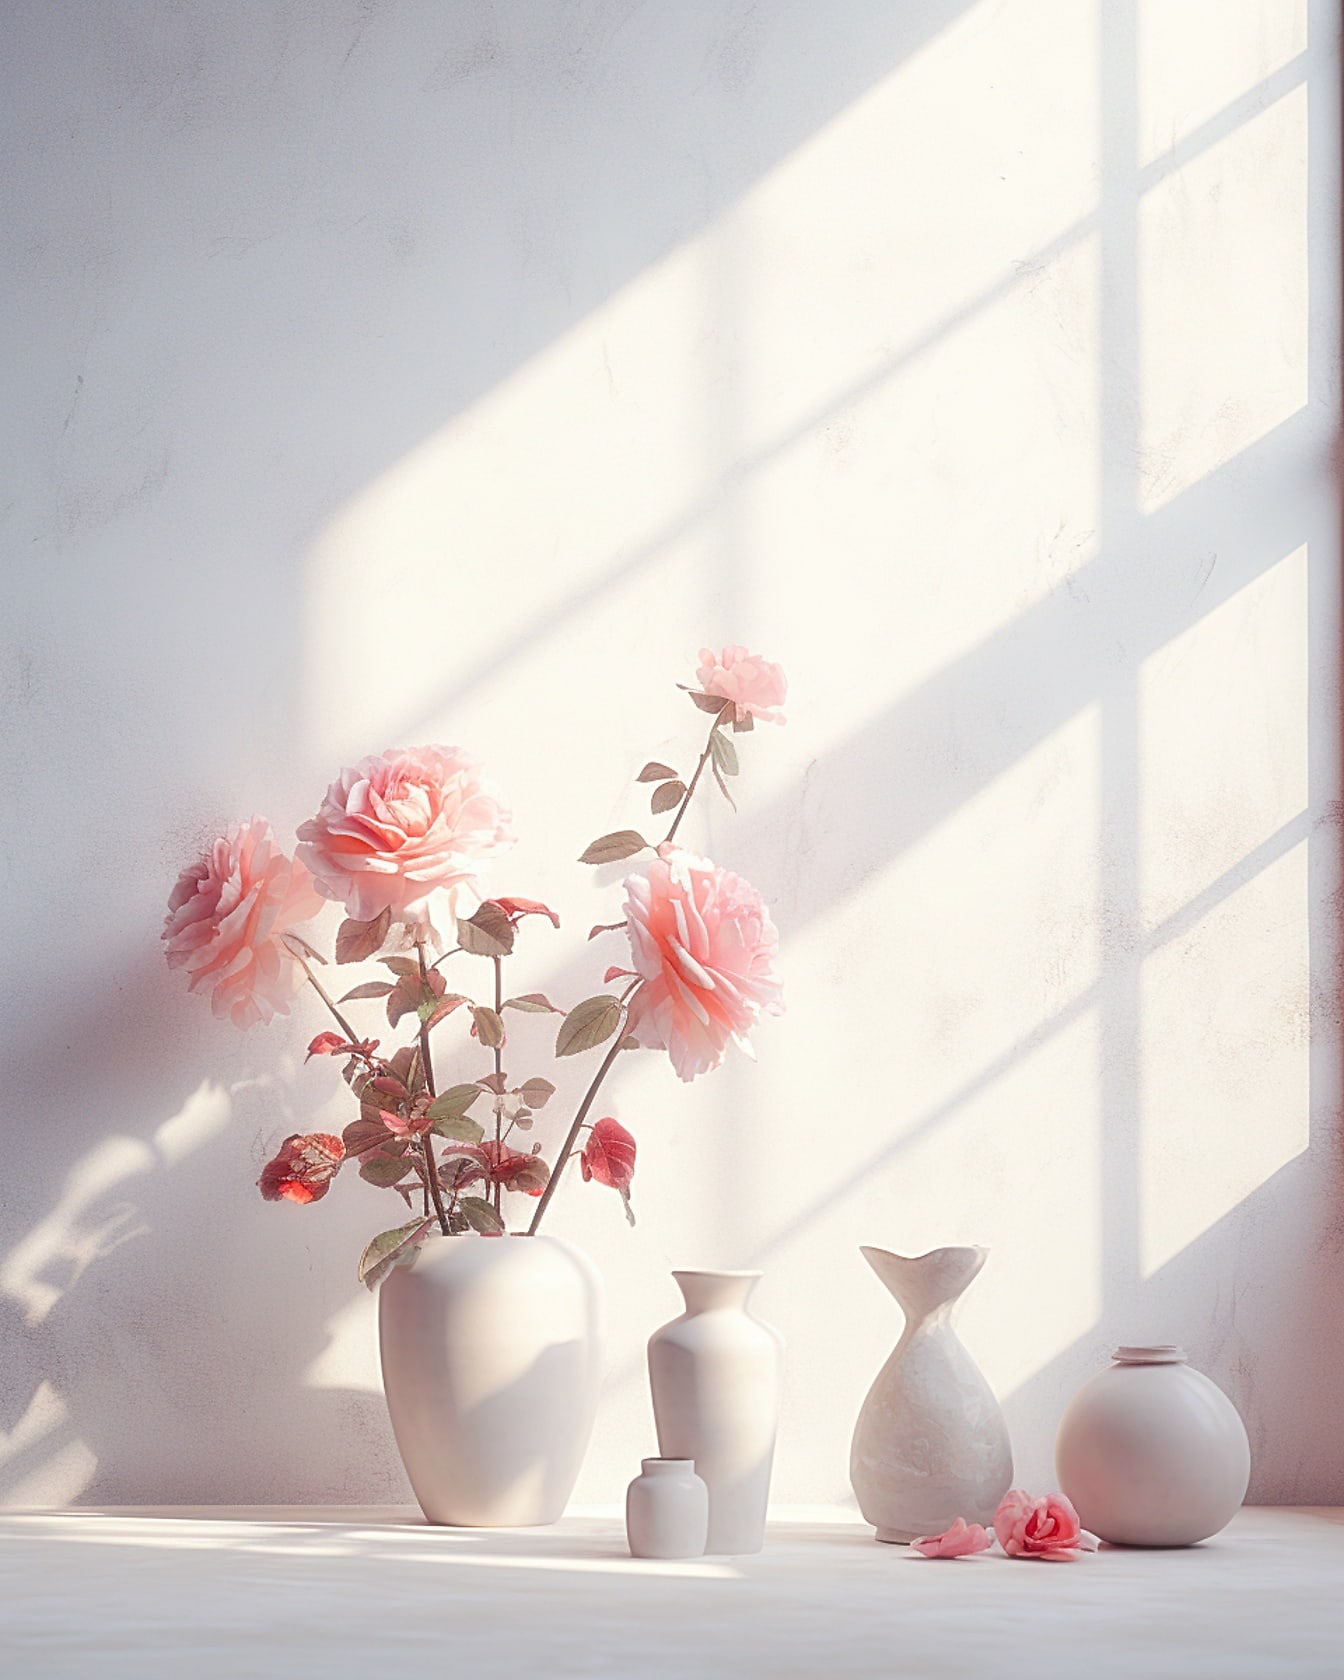 Ваза с розоватыми цветами и бежевыми вазами на столе при мягком свете окна